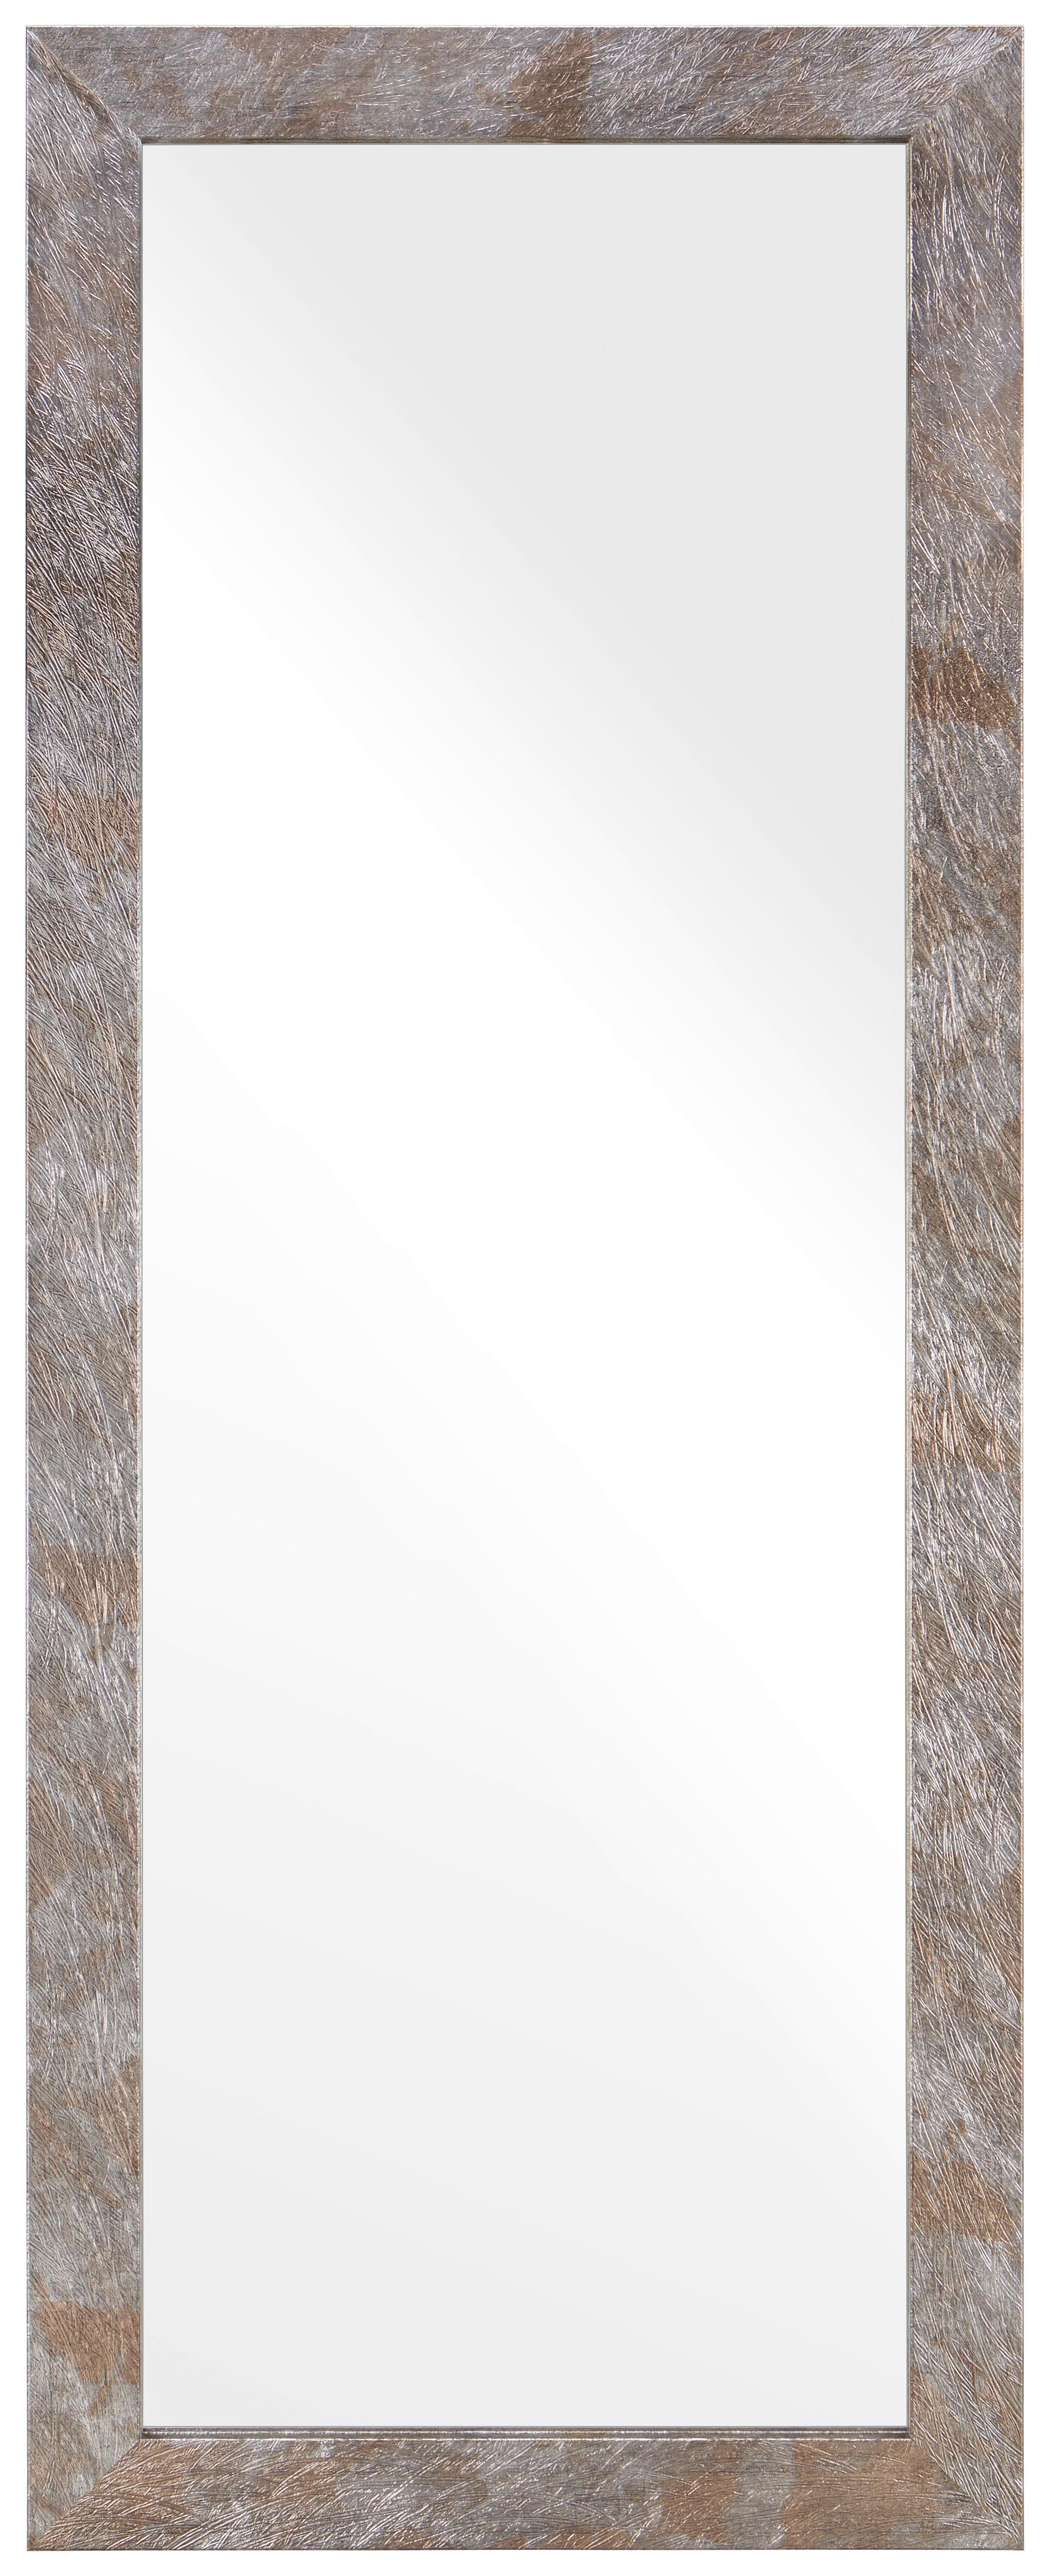 Wandspiegel Braun/Silberfarben - Silberfarben/Braun, MODERN, Glas/Holzwerkstoff (70/180cm) - Modern Living